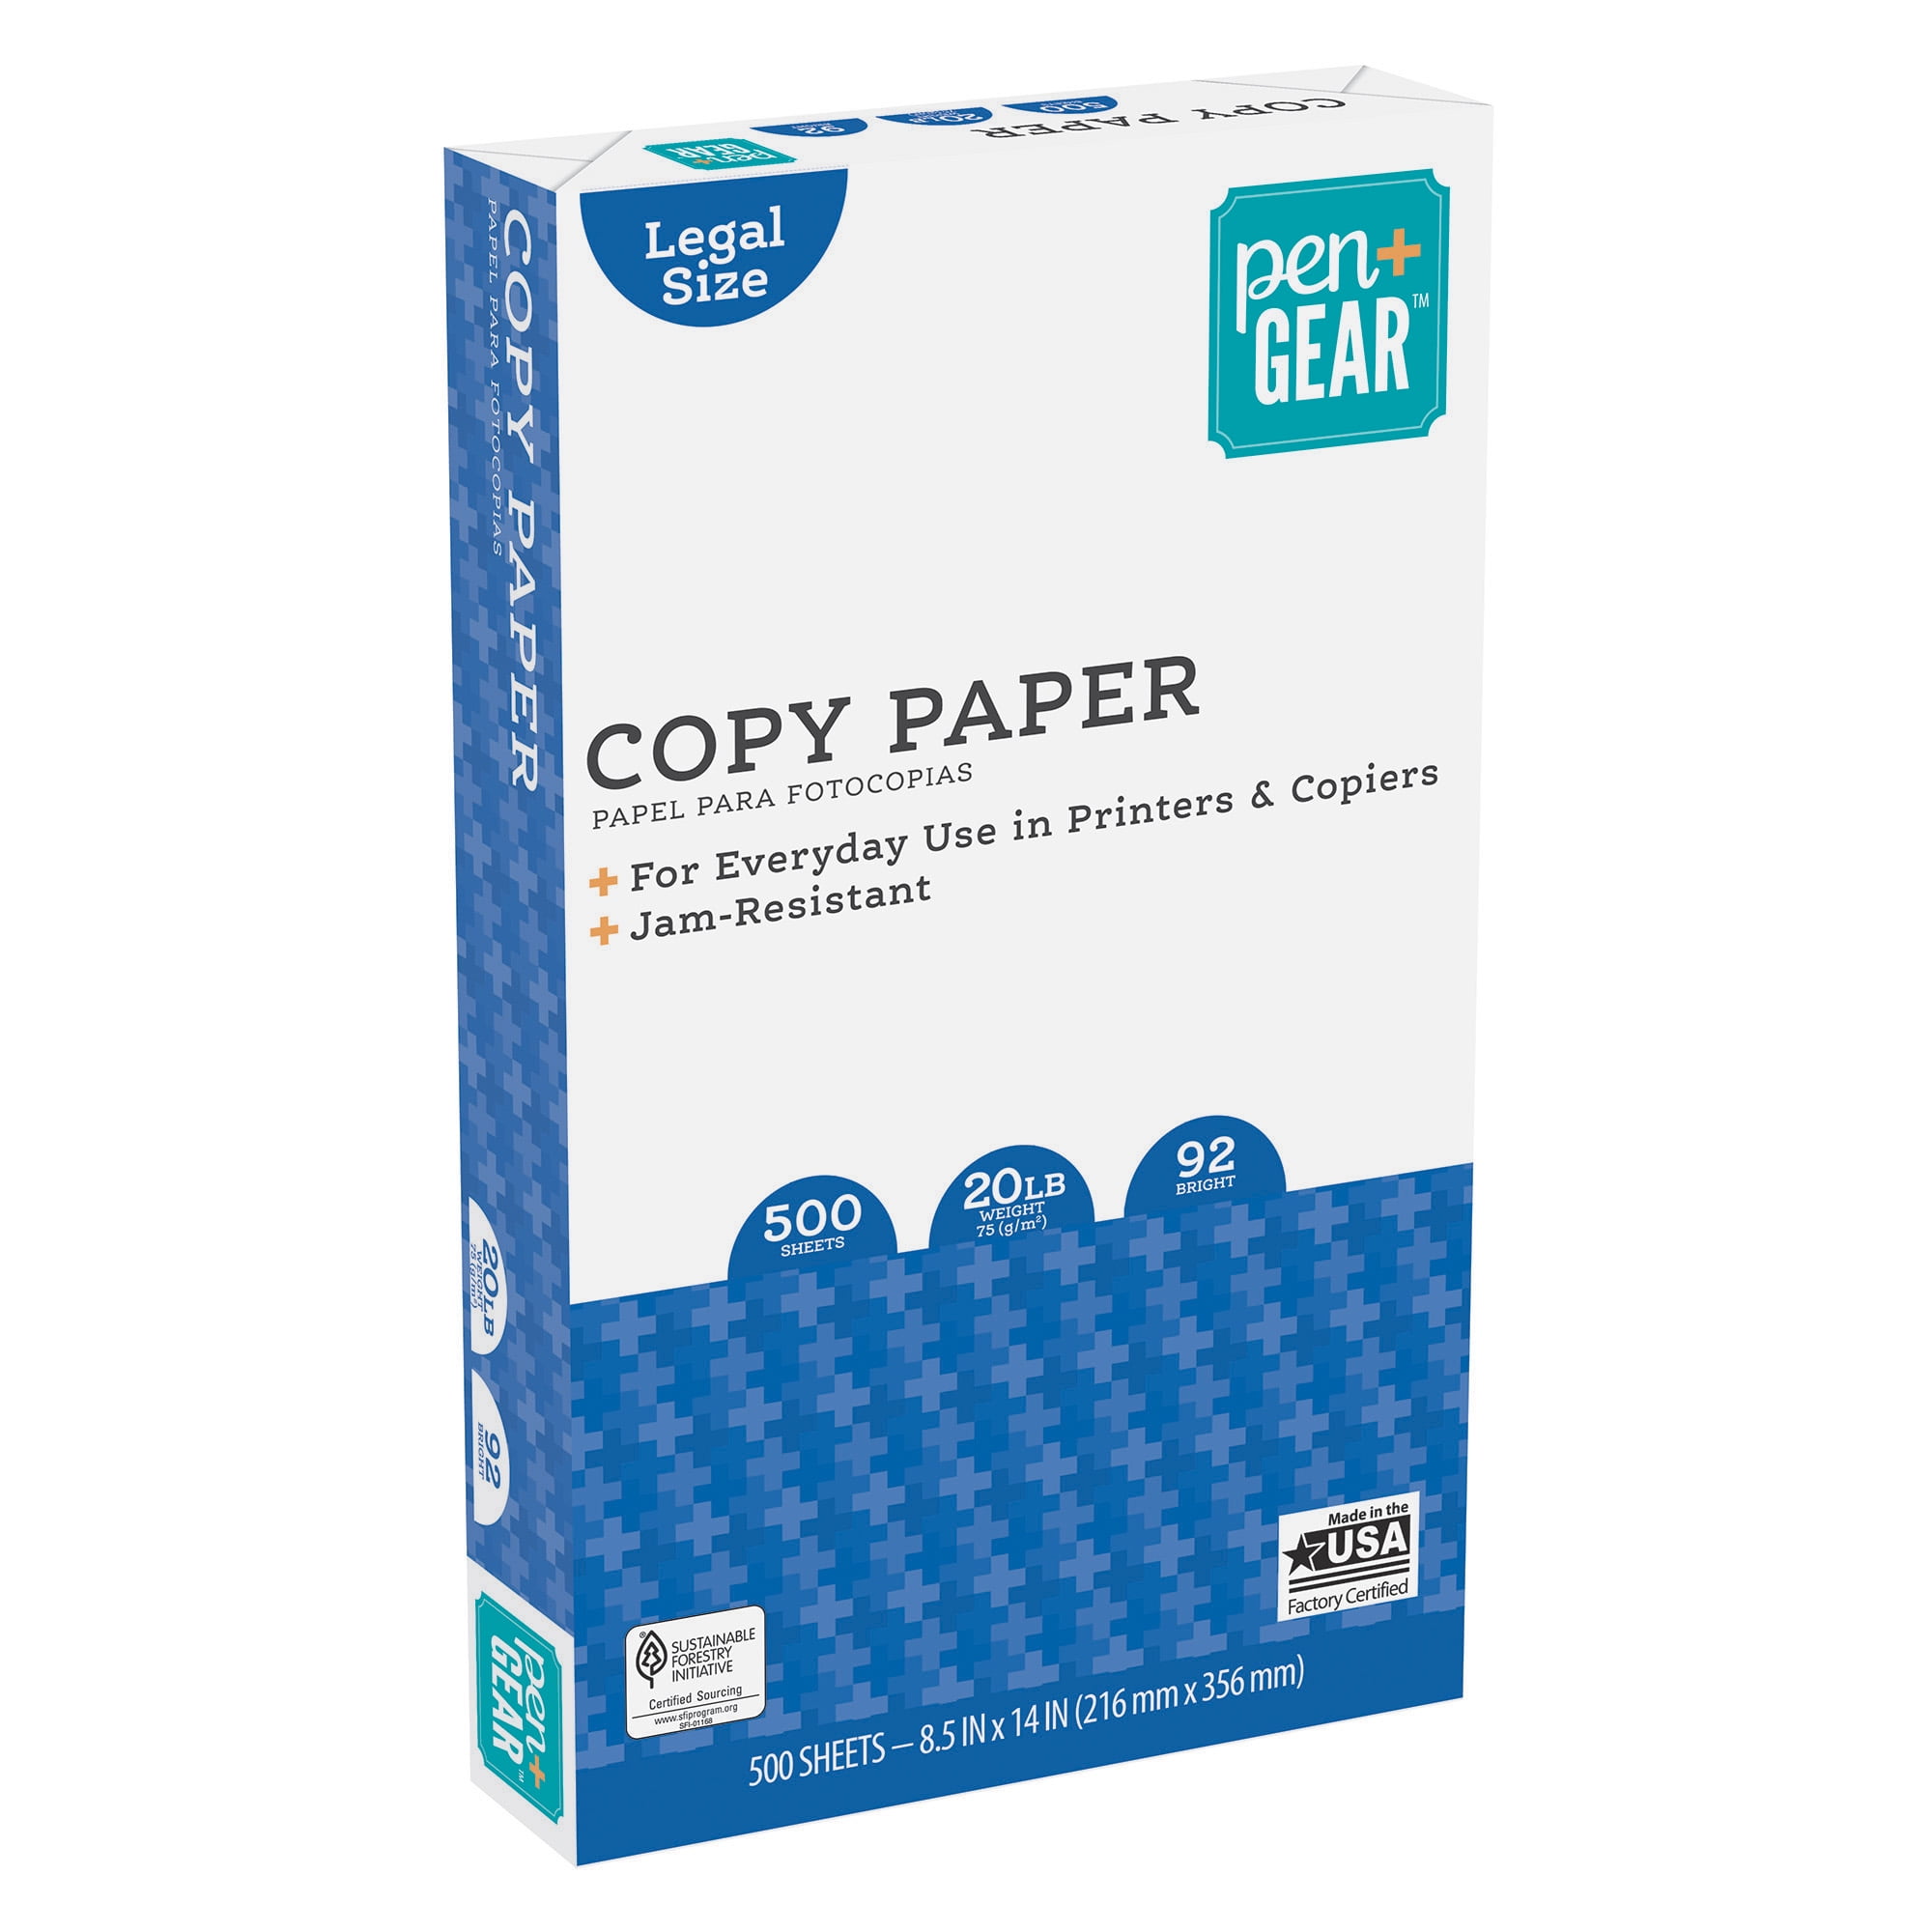 Pen+Gear Copy Paper, 8.5" x 14", 92 Bright, 20 lb., 1 Ream (500 Sheets)